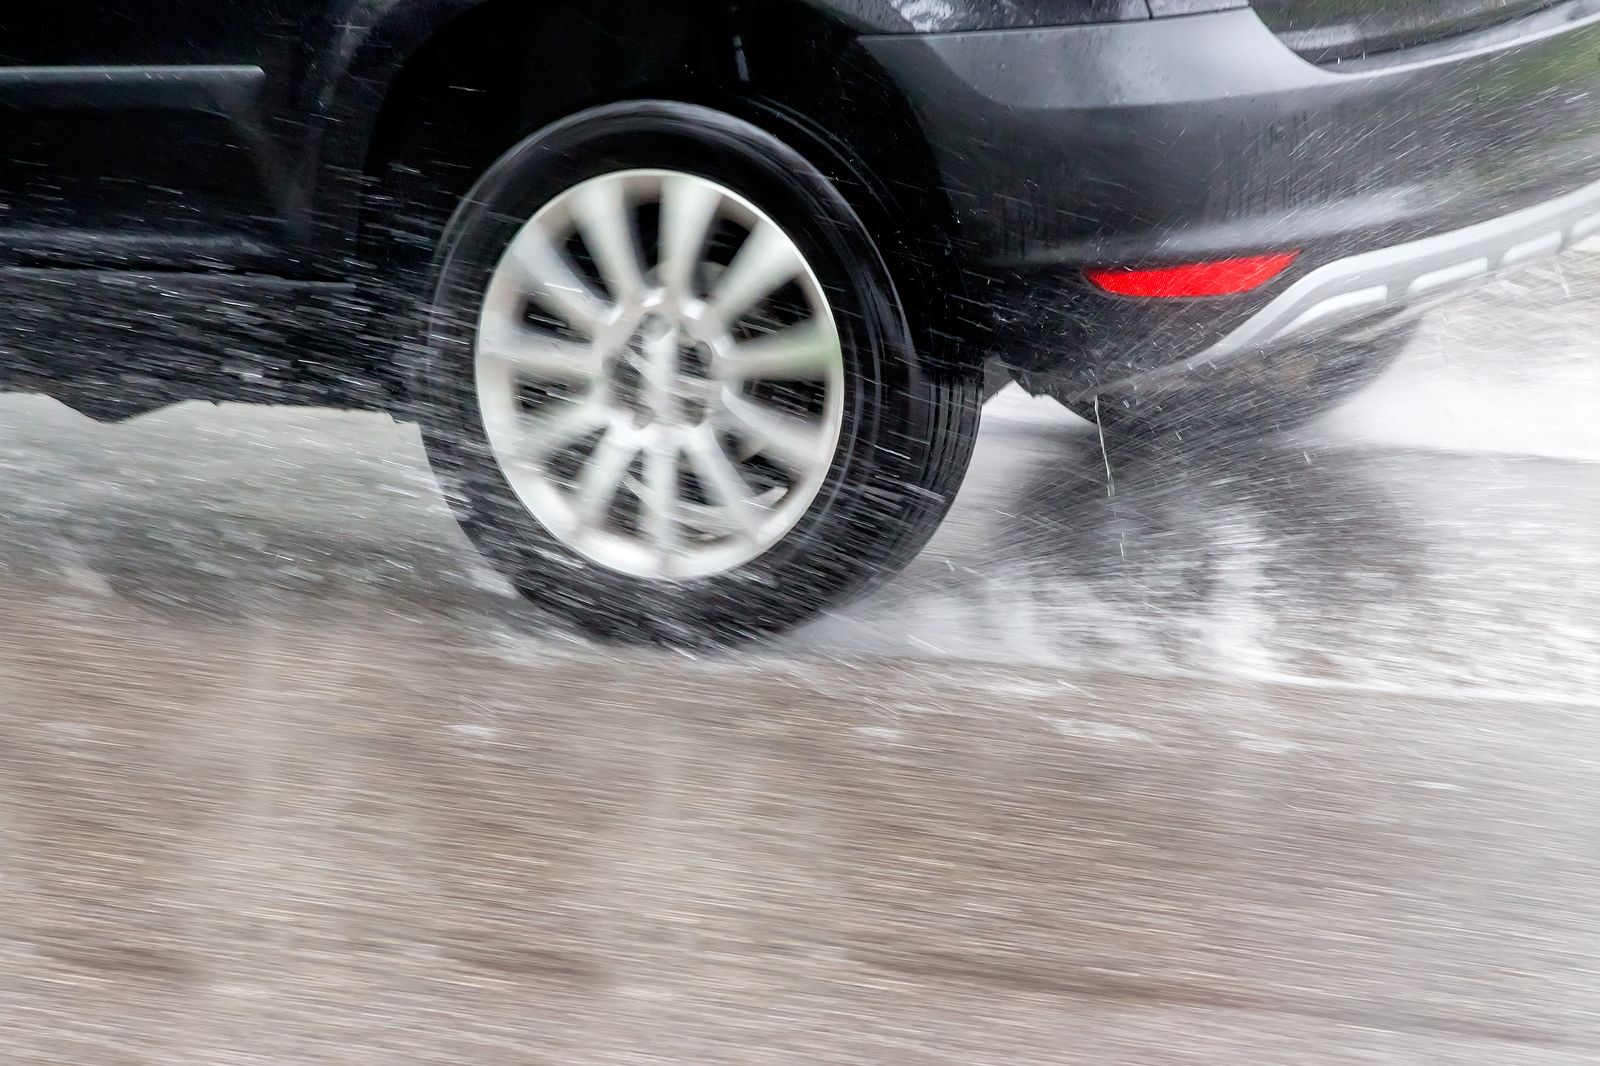 Sigue estos consejos de la Guardia Civil para conducir seguro bajo la lluvia